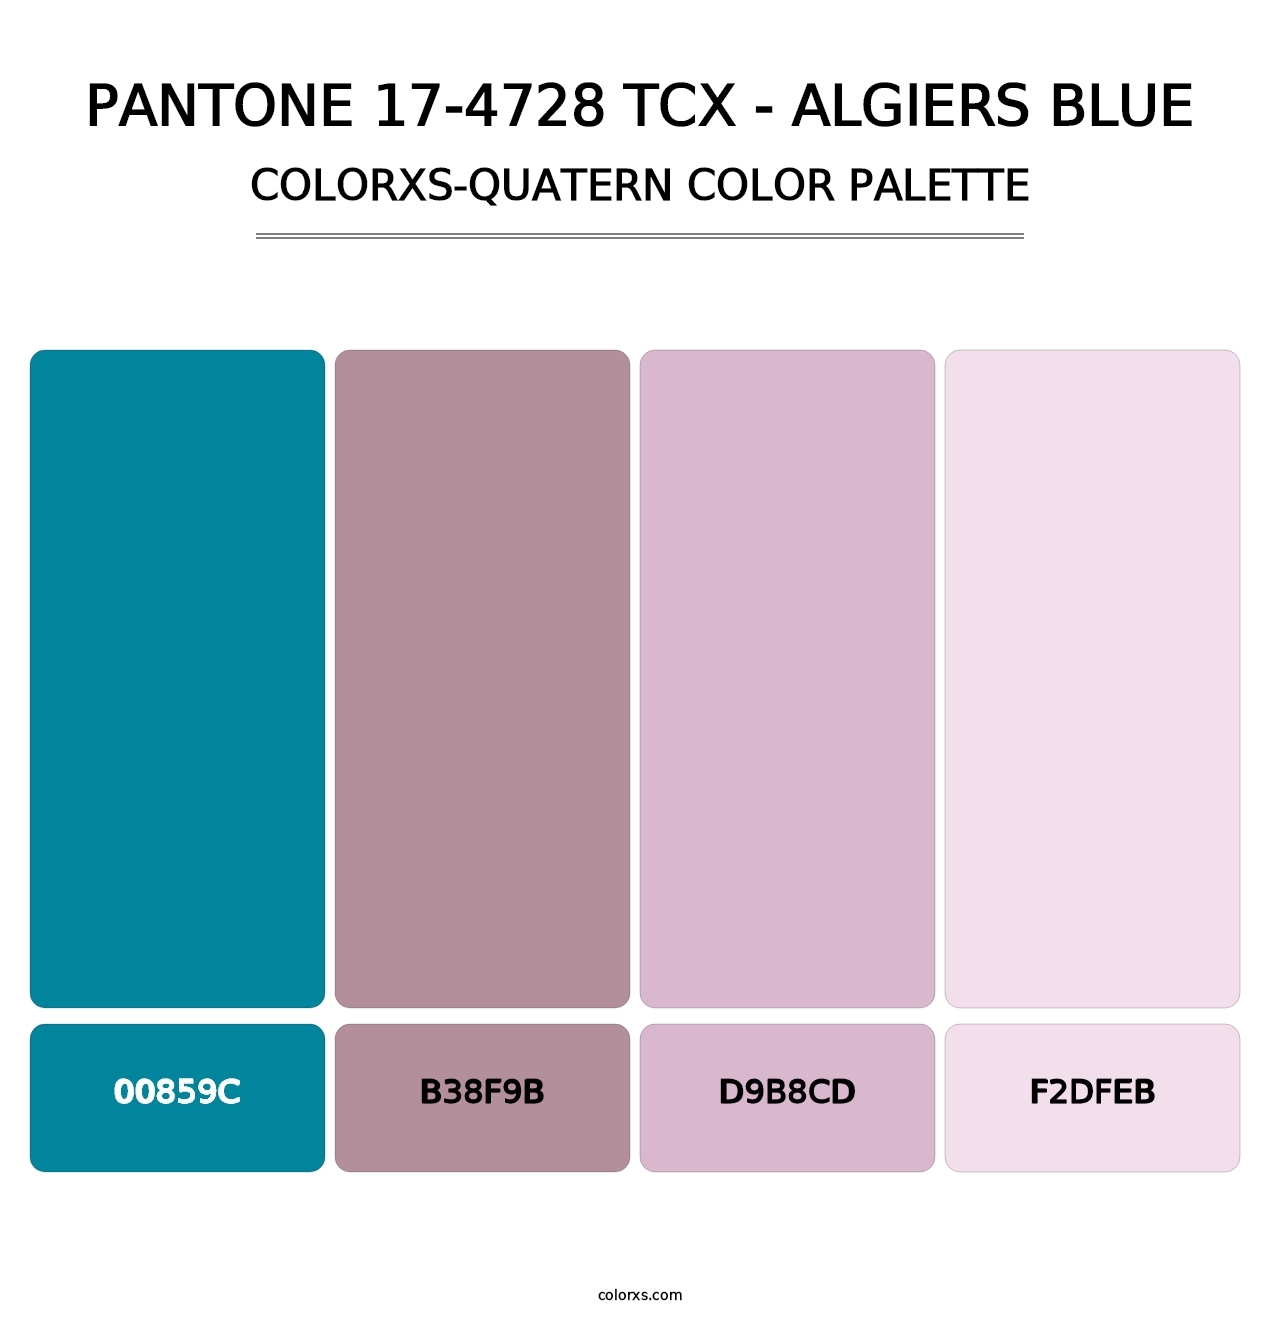 PANTONE 17-4728 TCX - Algiers Blue - Colorxs Quatern Palette